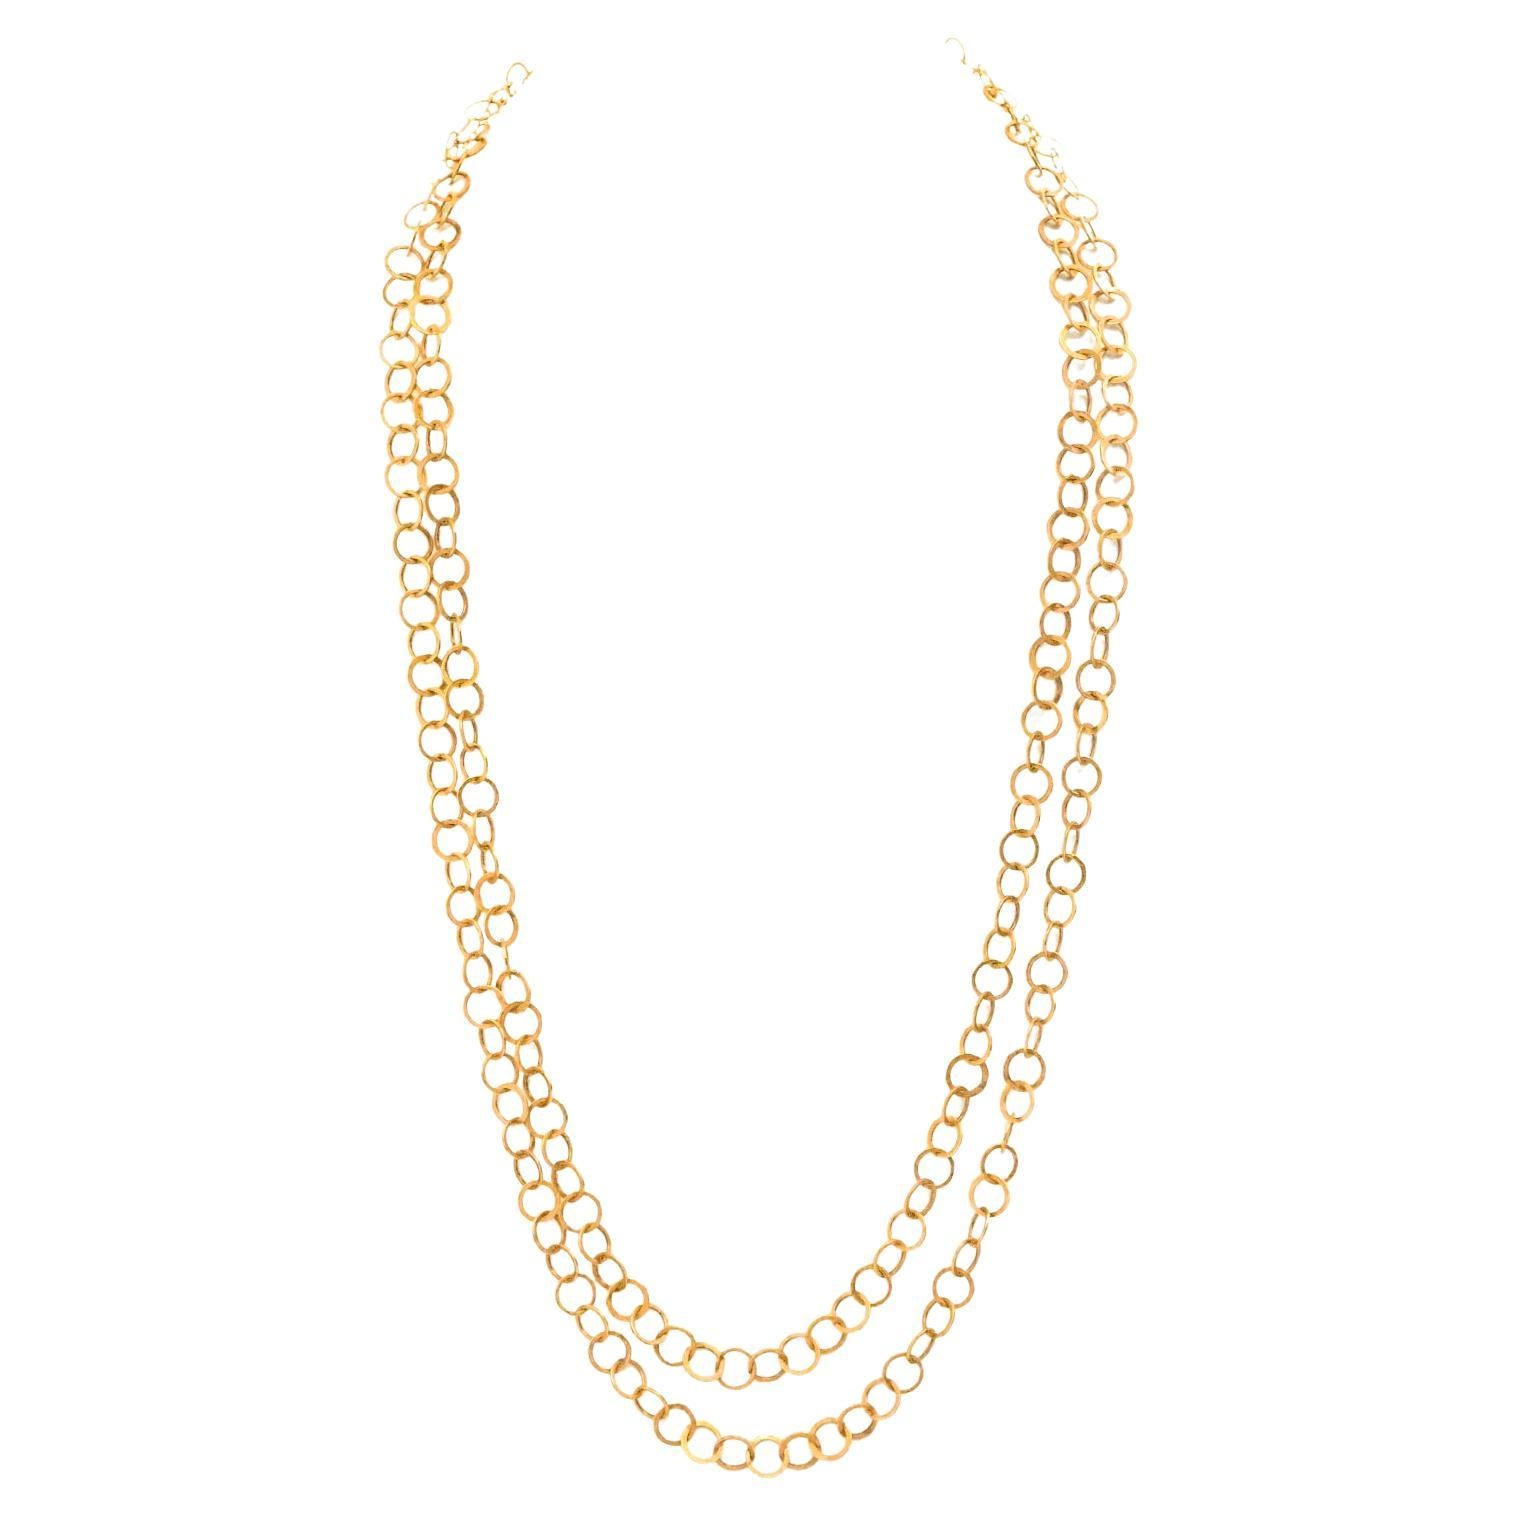 Comme Les Millionaires 60-Inch Gold Necklace For Sale